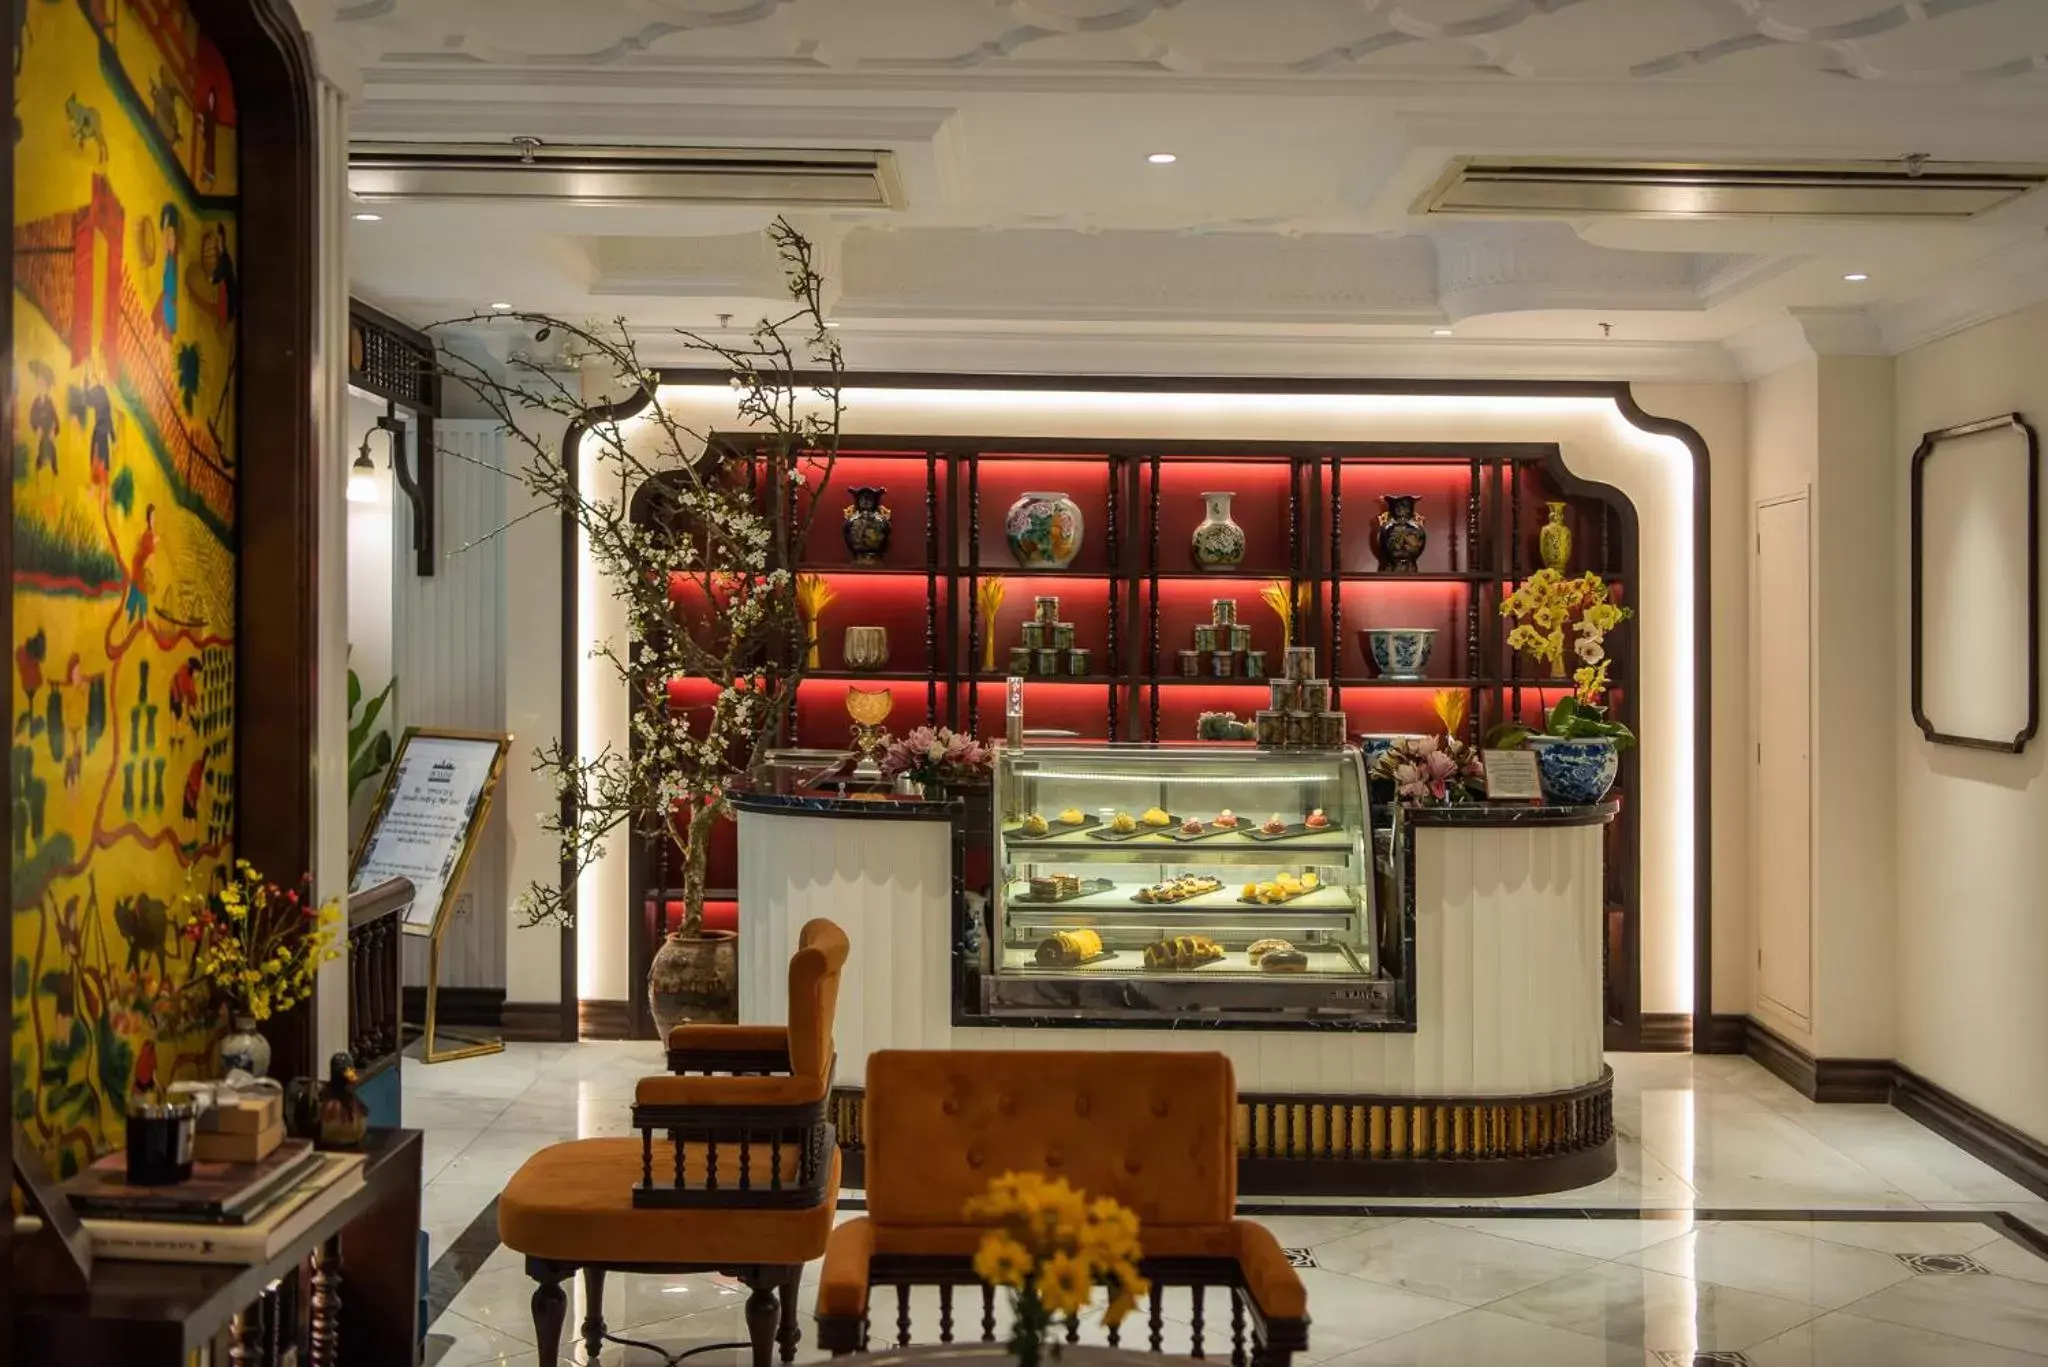 Lobby or reception in Hanoi Tirant Hotel